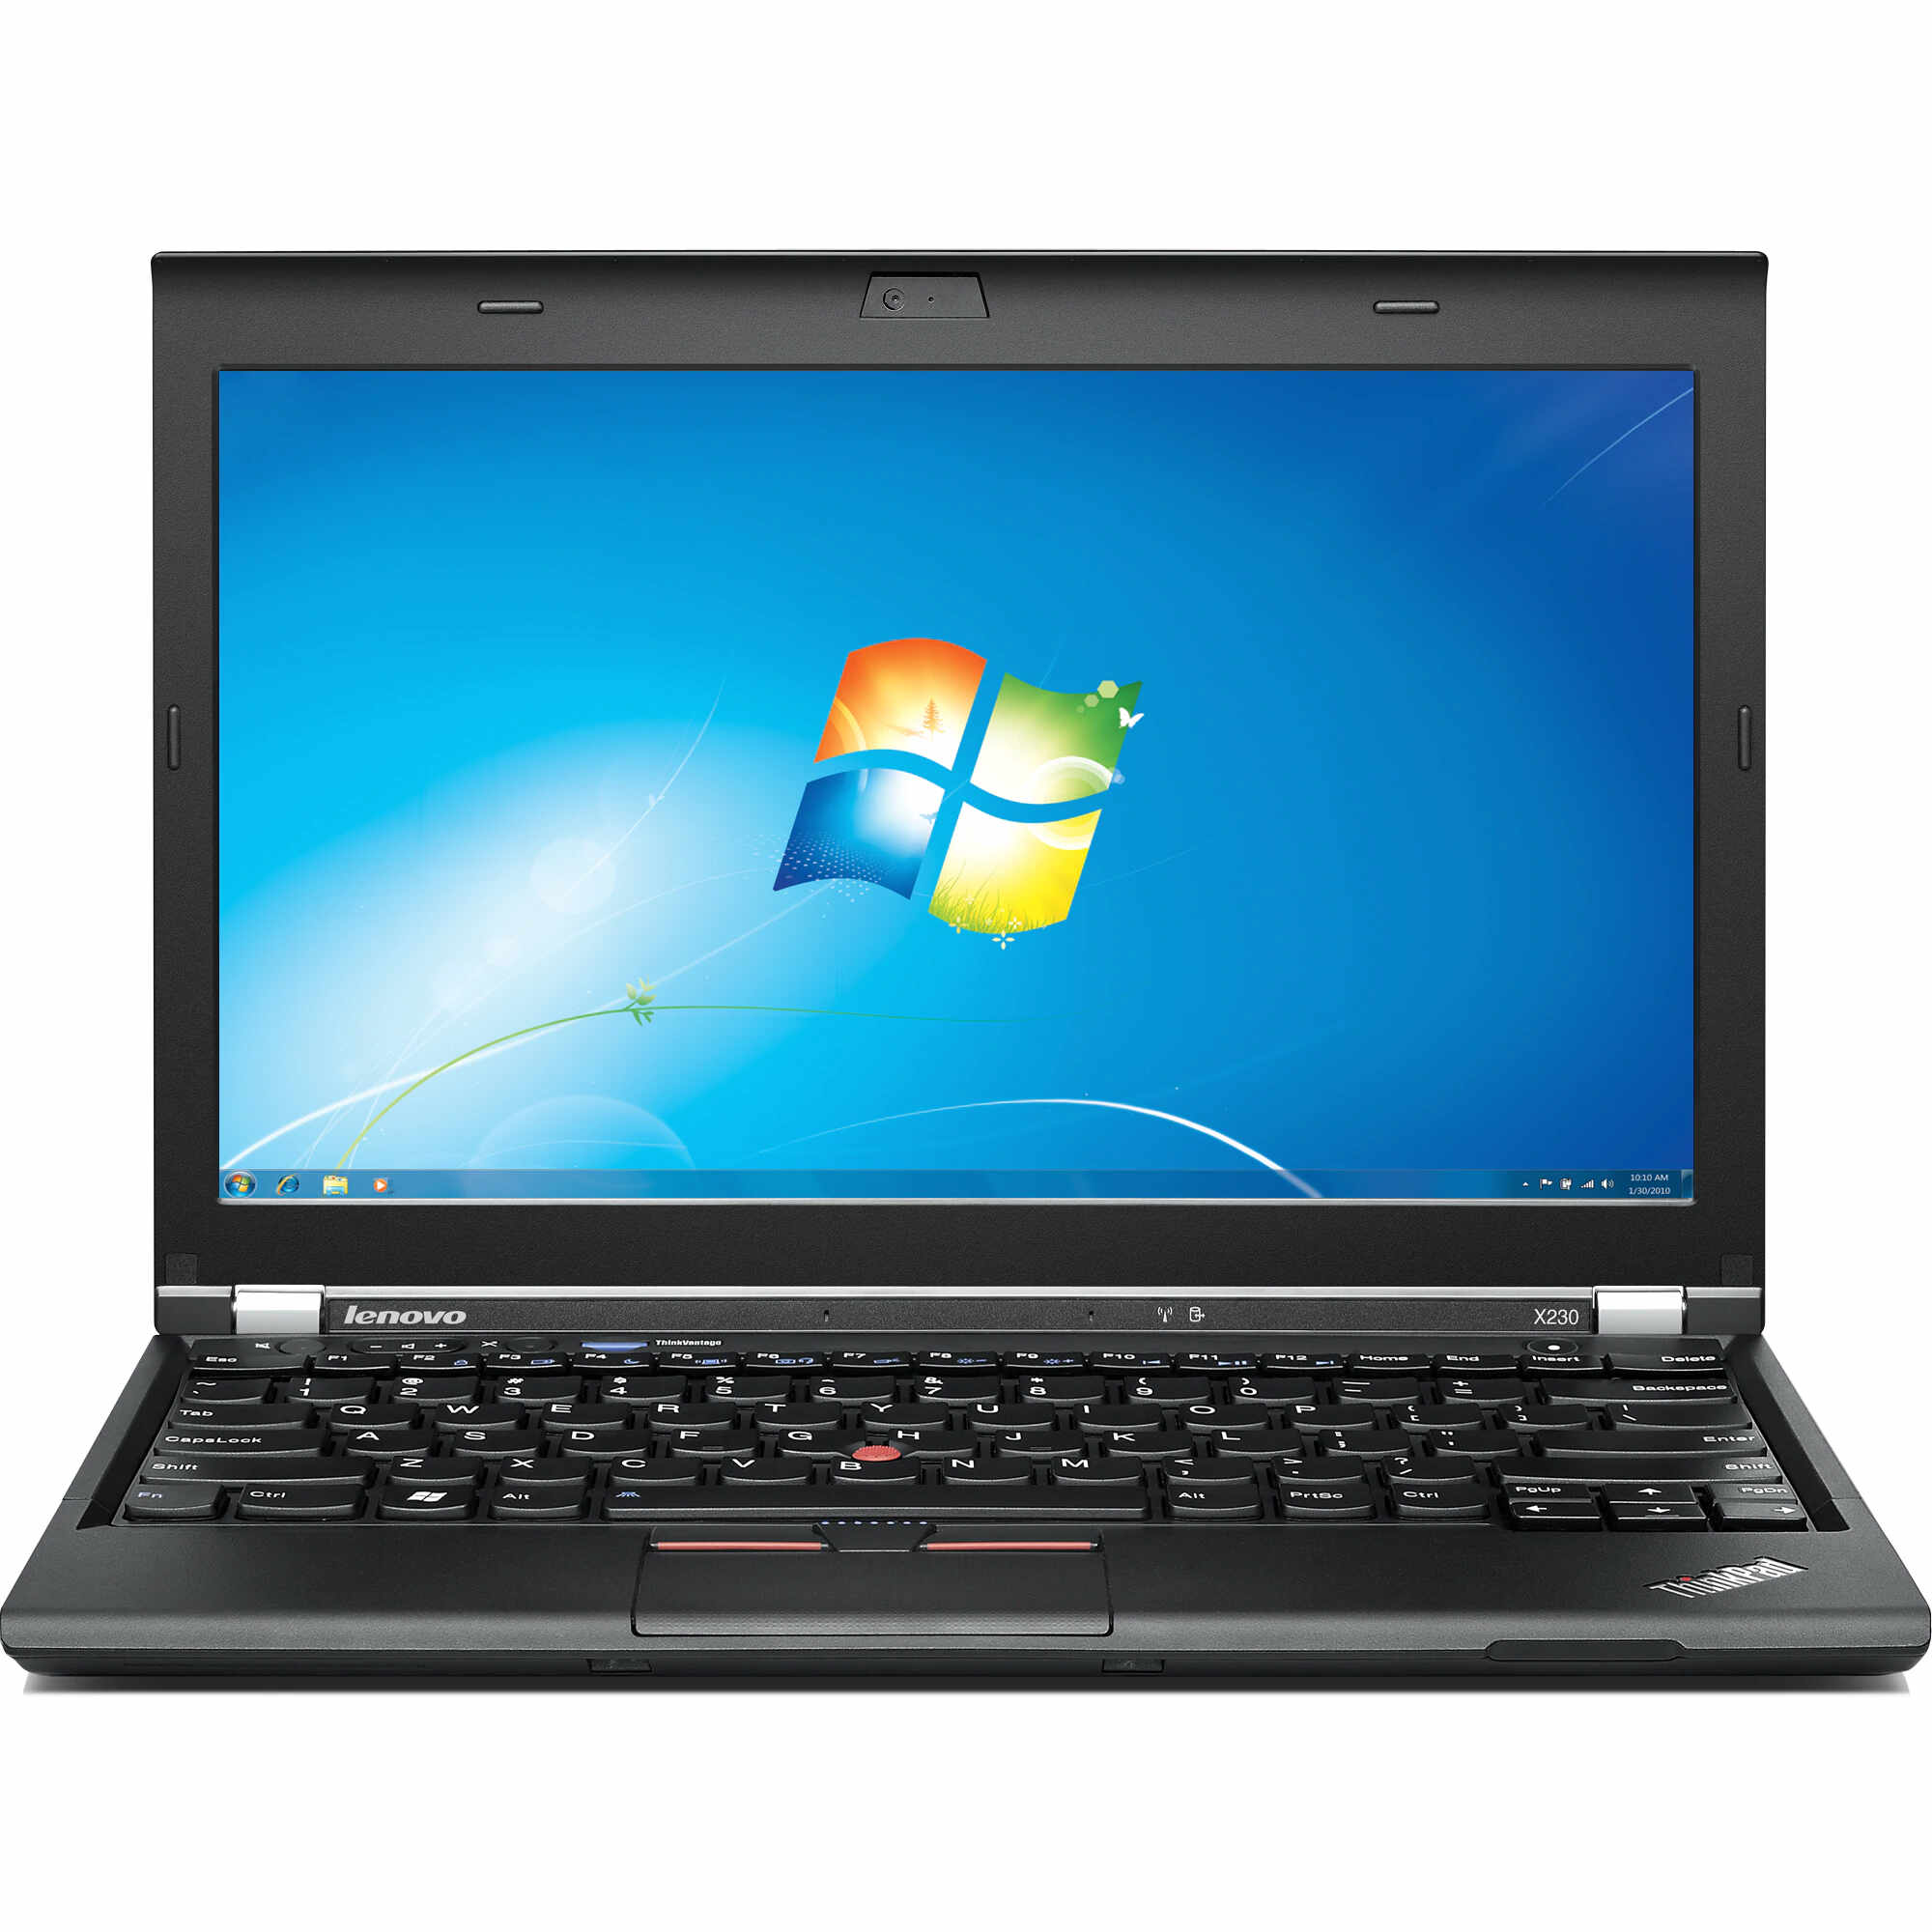 Laptop LENOVO ThinkPad x230i, Intel Core i3-3110M 2.40GHz, 4GB DDR3, 120GB SSD, 12.5 Inch, Webcam